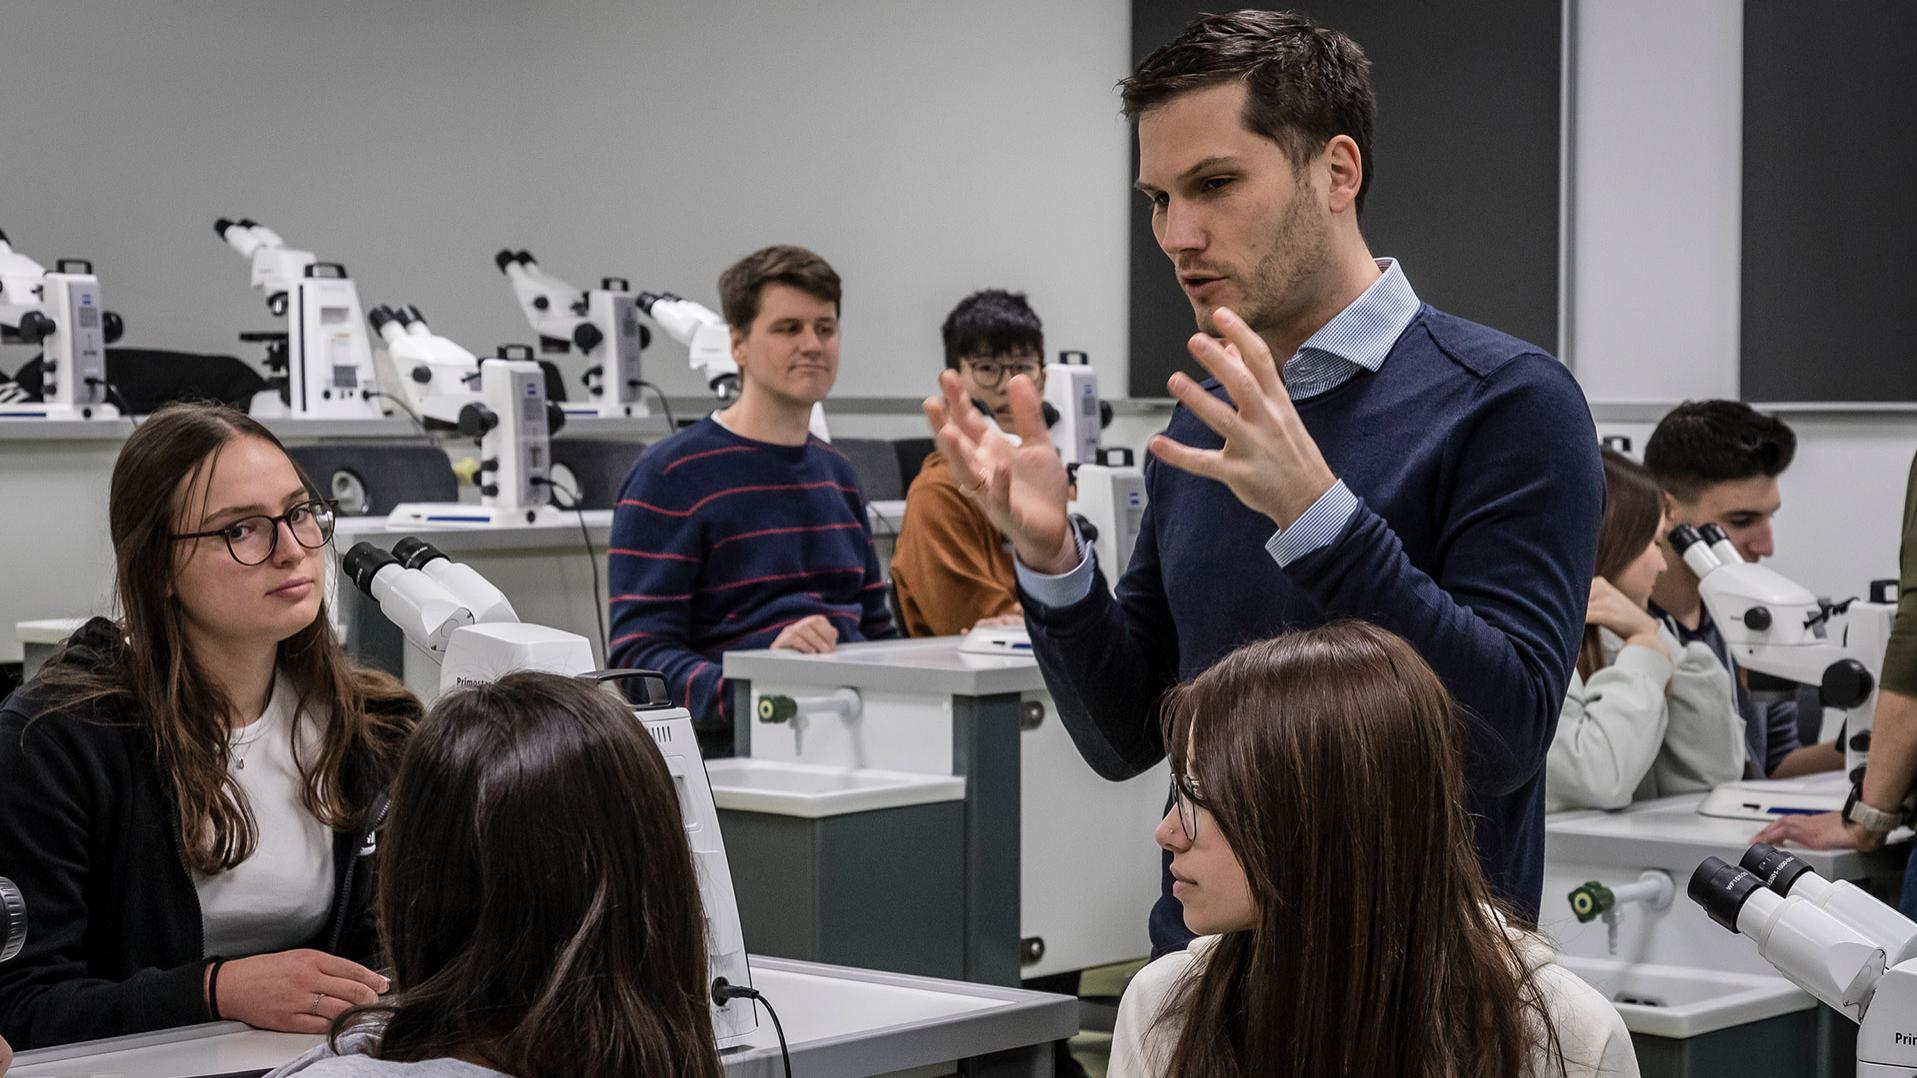 ZEISS Mikroskopiespezialist Dr. Frank Vogler richtete das Digitale Klassenzimmer ein und zeigte den Schülerinnen und Schülern sowie den Lehrenden, wie die Mikroskope funktionieren. Die Mikroskope und die HD-Streaming-Kameras für die beiden Lehrendengeräte ermöglichen einen praxisbezogenen und gleichzeitig vernetzten, modernen Biologieunterricht.